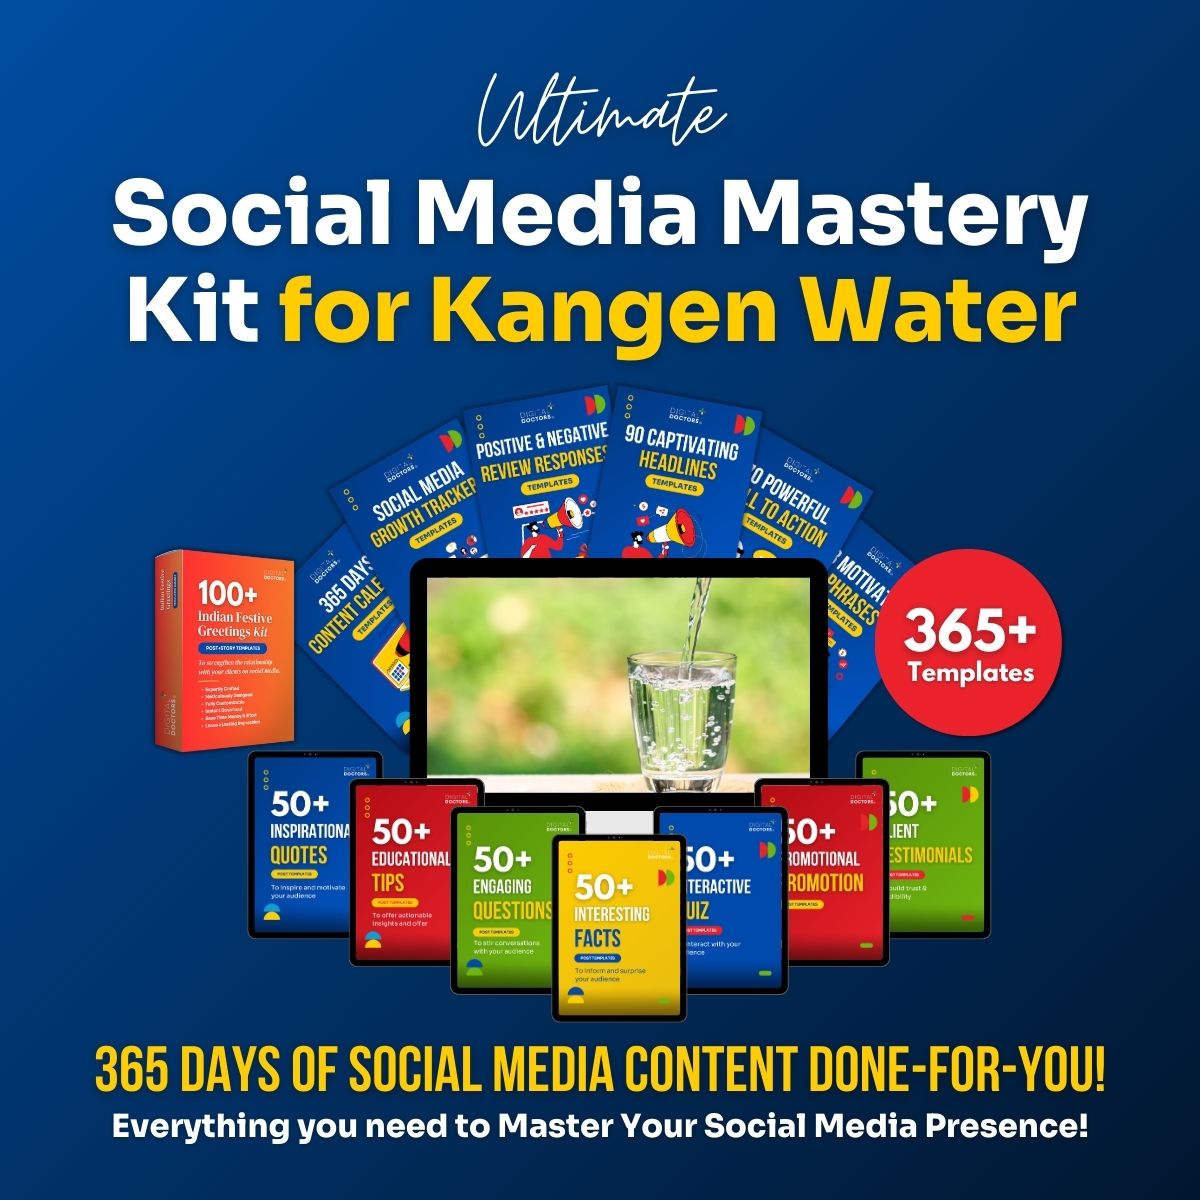 Ultimate Social Media Kit for Kangen Water